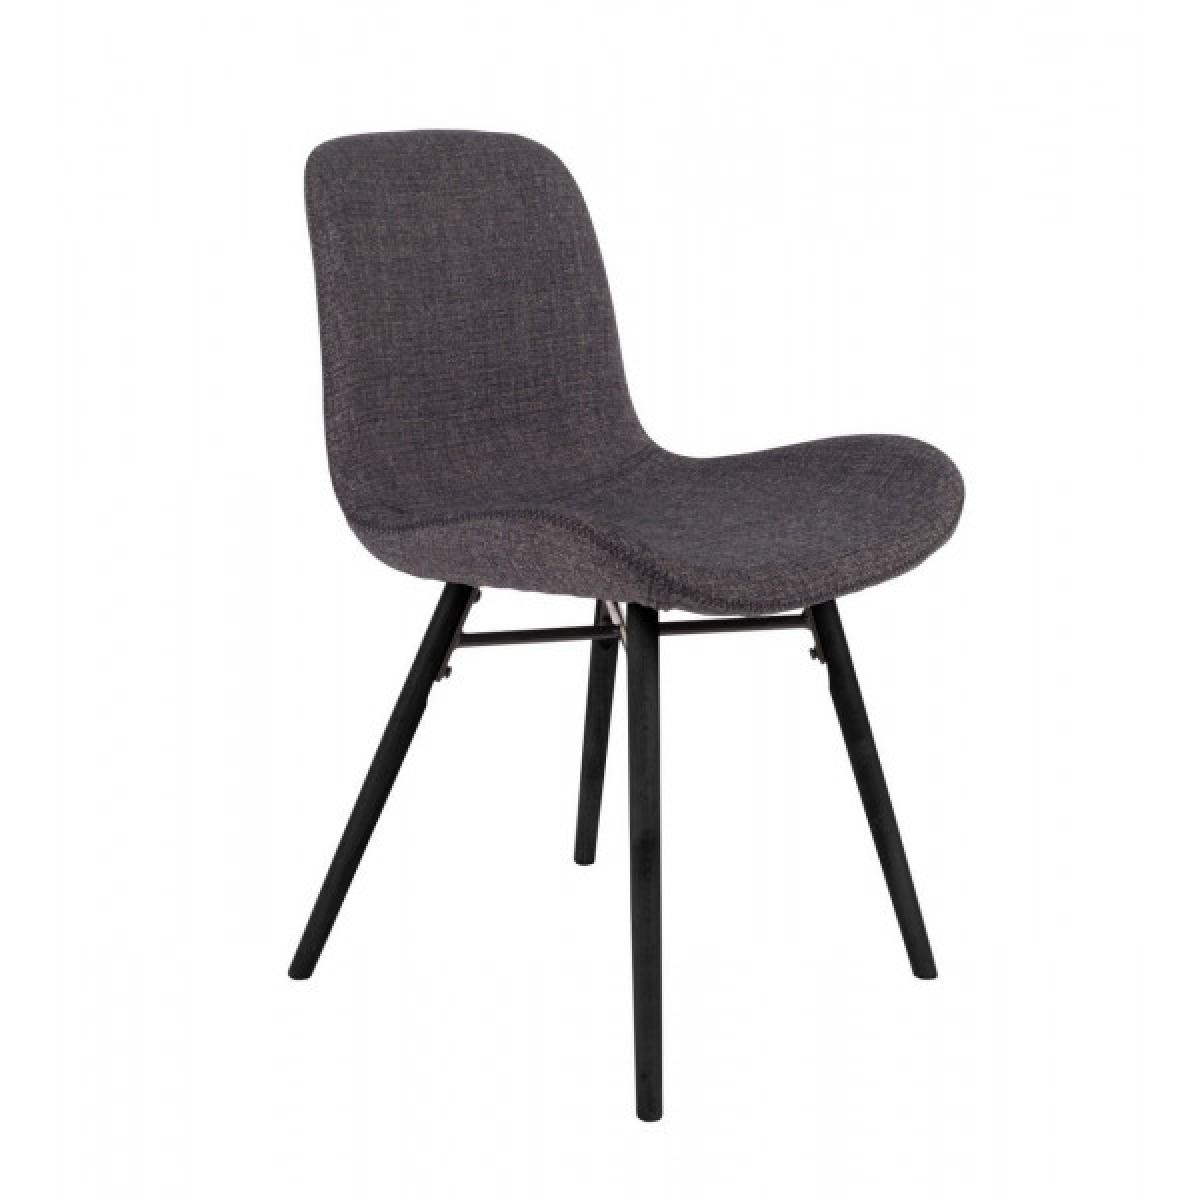 Mathi Design - CURVE - Chaise design de repas tissu gris foncé - Chaises